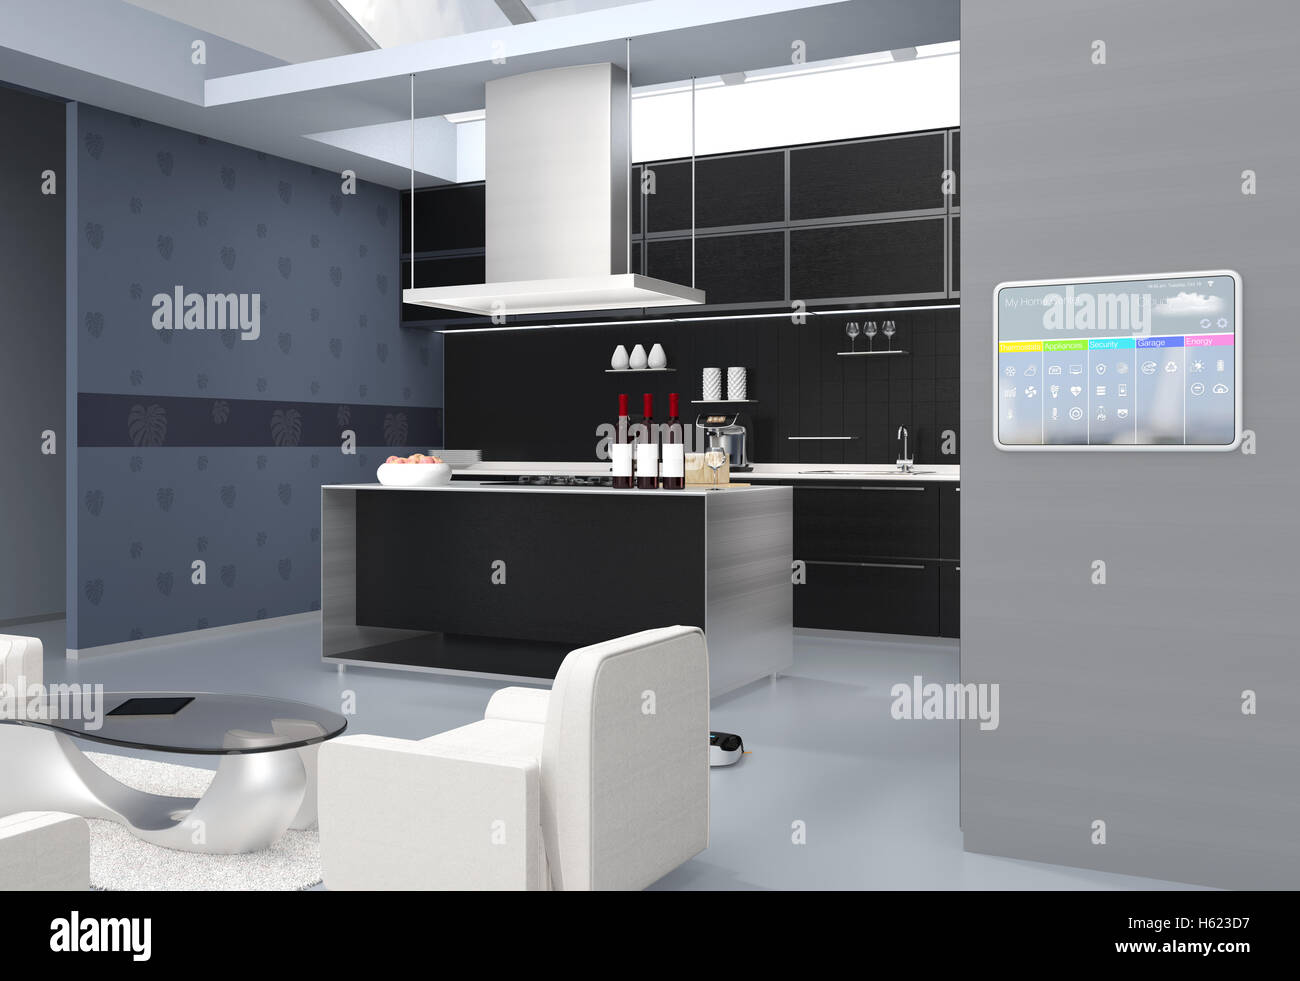 Home automation il pannello di controllo sul muro di cucina. Il rendering 3D'immagine. Foto Stock